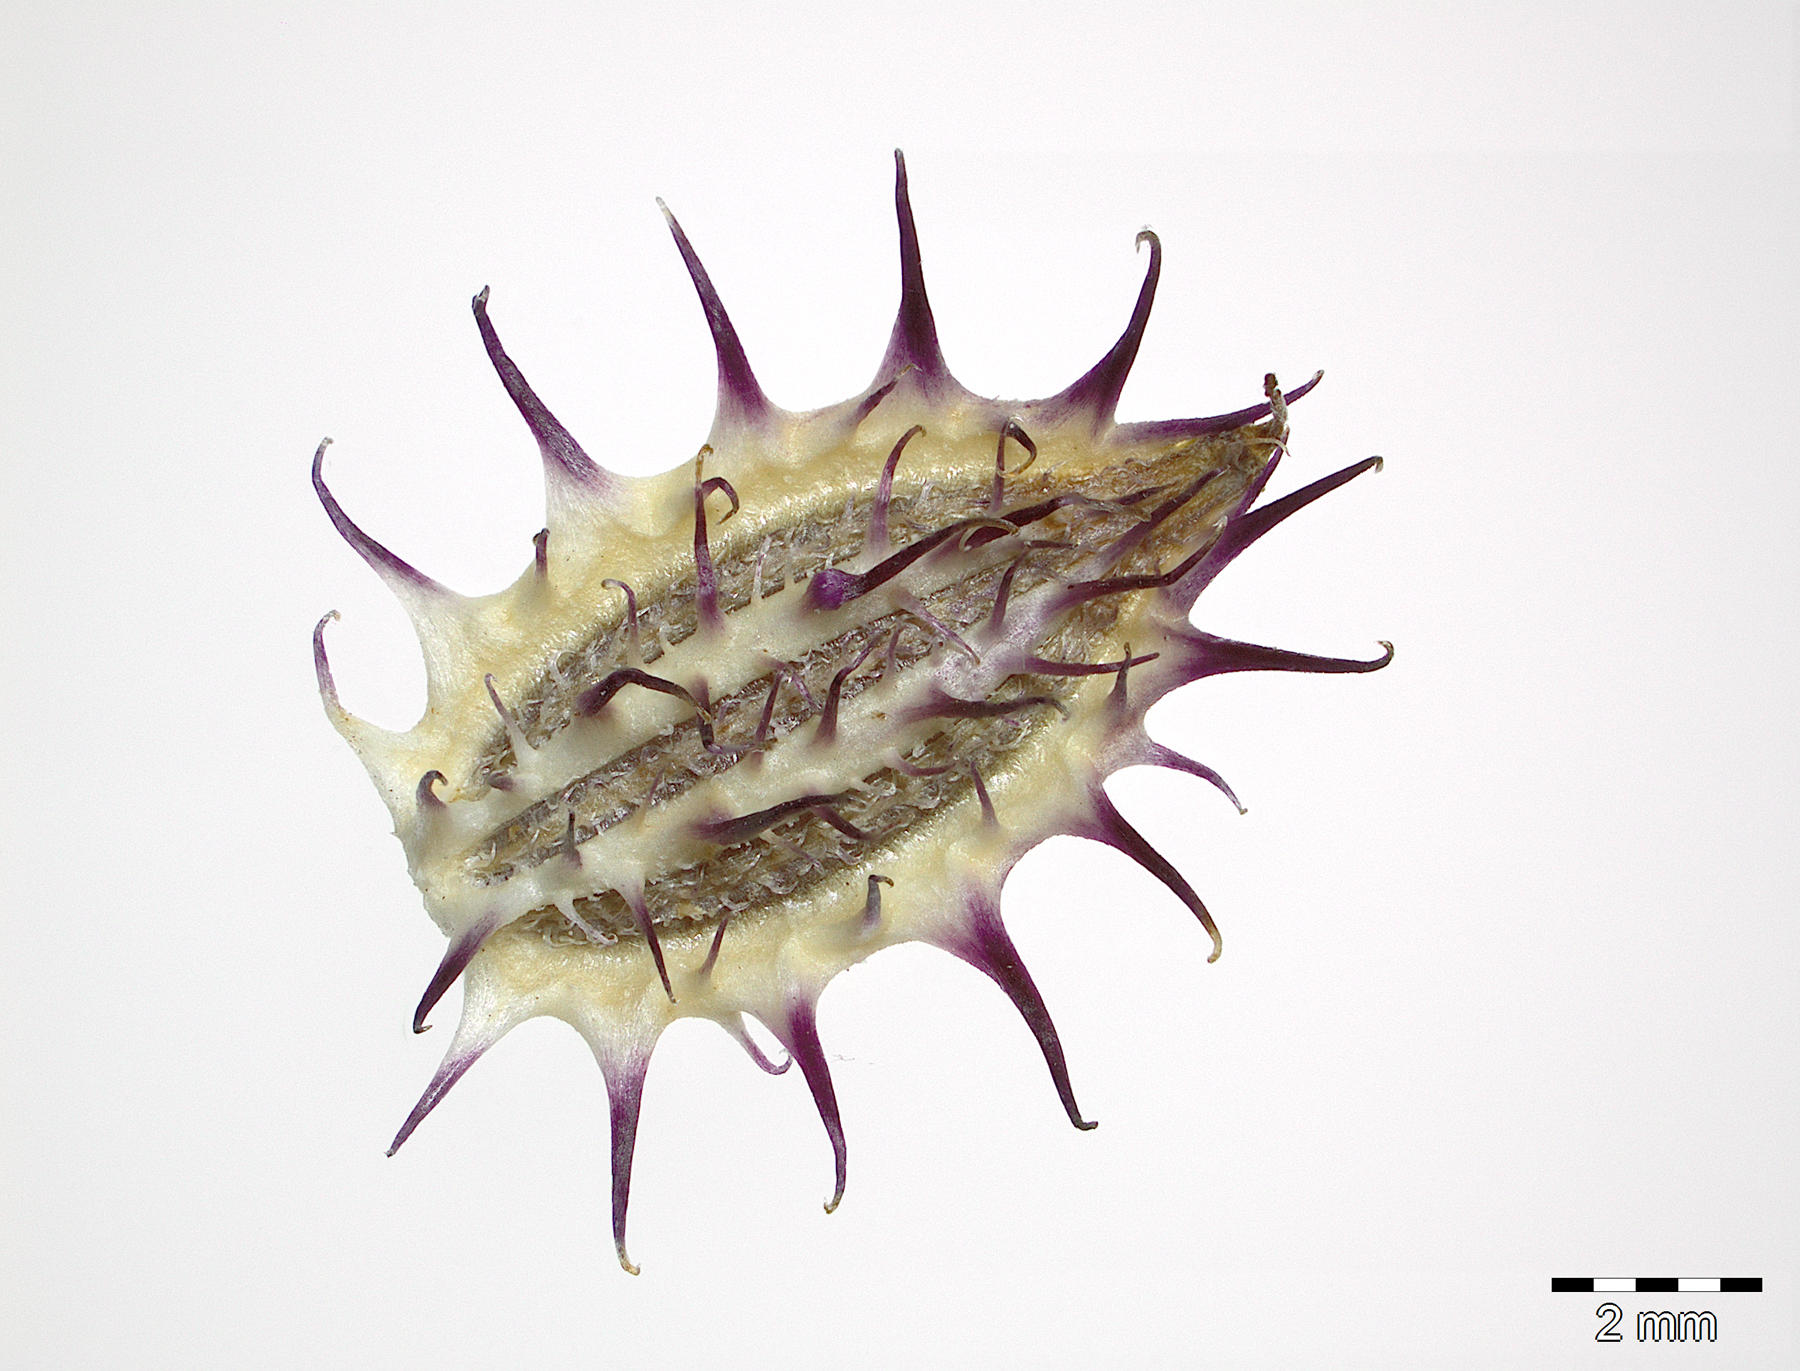 Der Samen von Orlaya daucoides, ein Möhrenartiger Breitsame, der auf Zypern gesammelt wurde. Er gehört zu den sogenannten Doldengewächsen wie Möhren oder Dill und gehört zum Forschungsschwerpunkt Europa und Mittelmeergebiet.